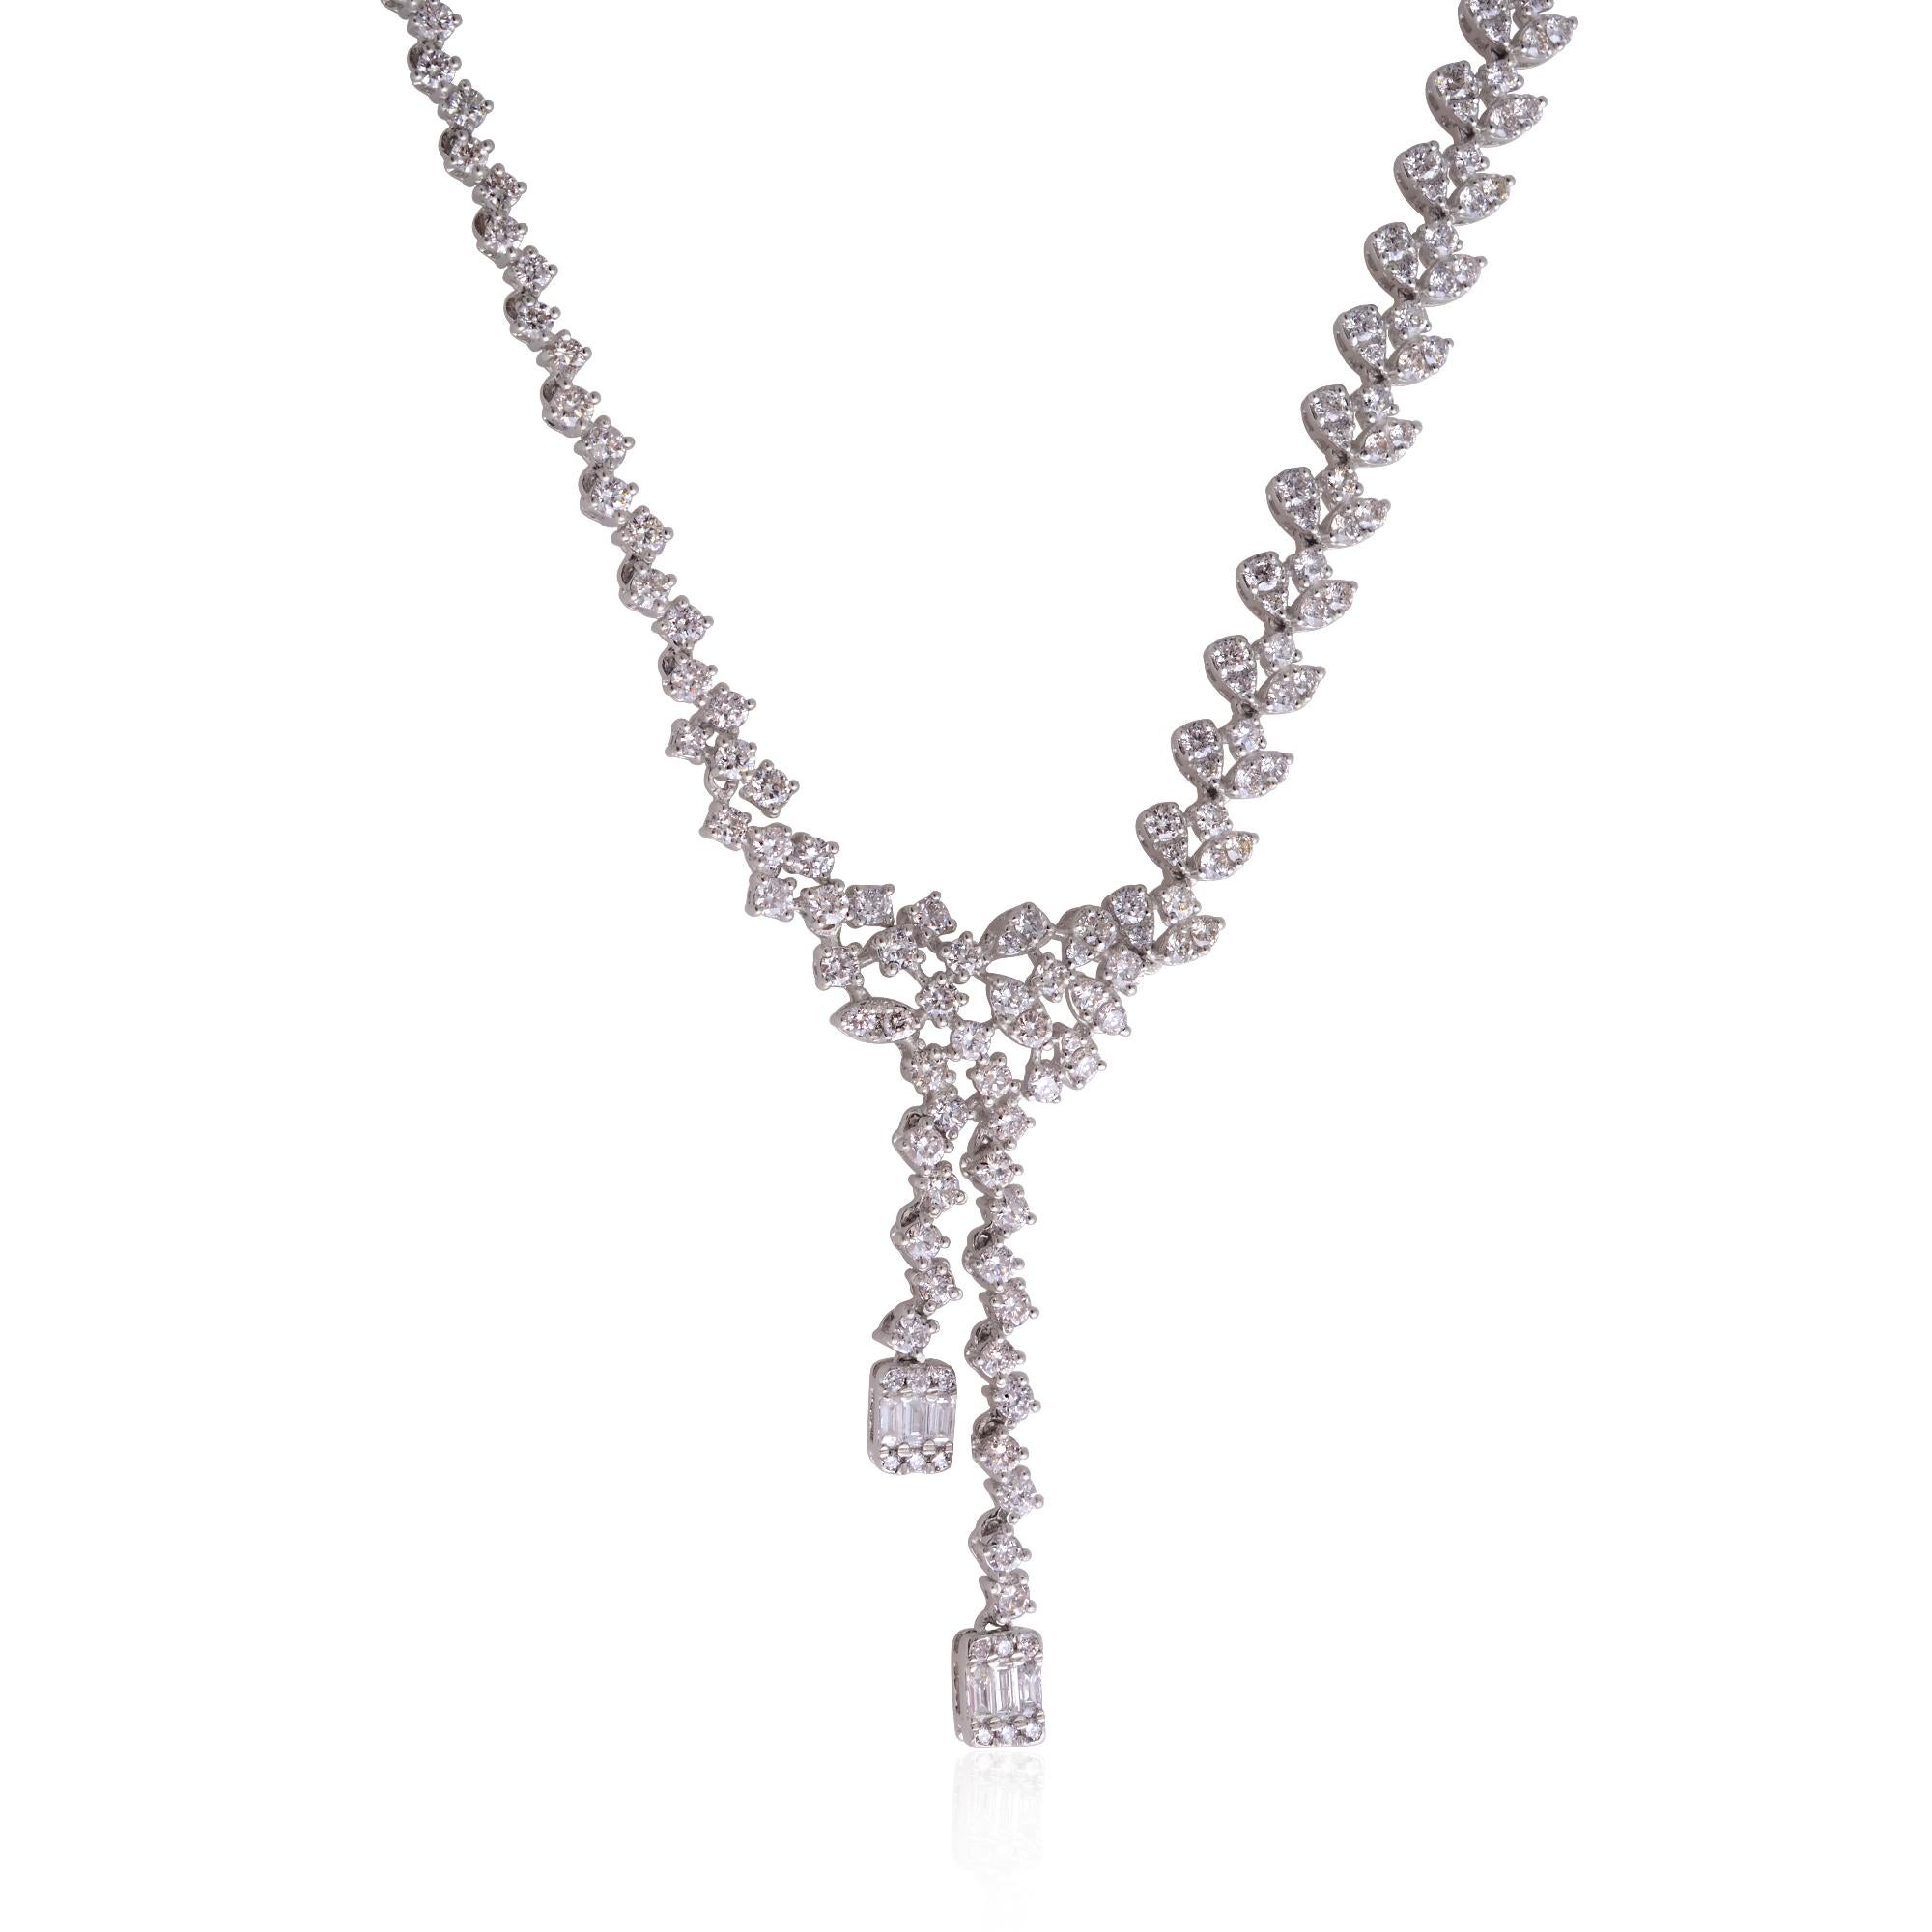 Die Baguette-Diamanten sind fachmännisch in ein Collier im Lariat-Stil eingefasst, das dem Design einen Hauch von Vielseitigkeit und Modernität verleiht. Die Kette hat einen Y-förmigen Fall, wobei ein Ende der Kette durch das andere hindurchgeht. So